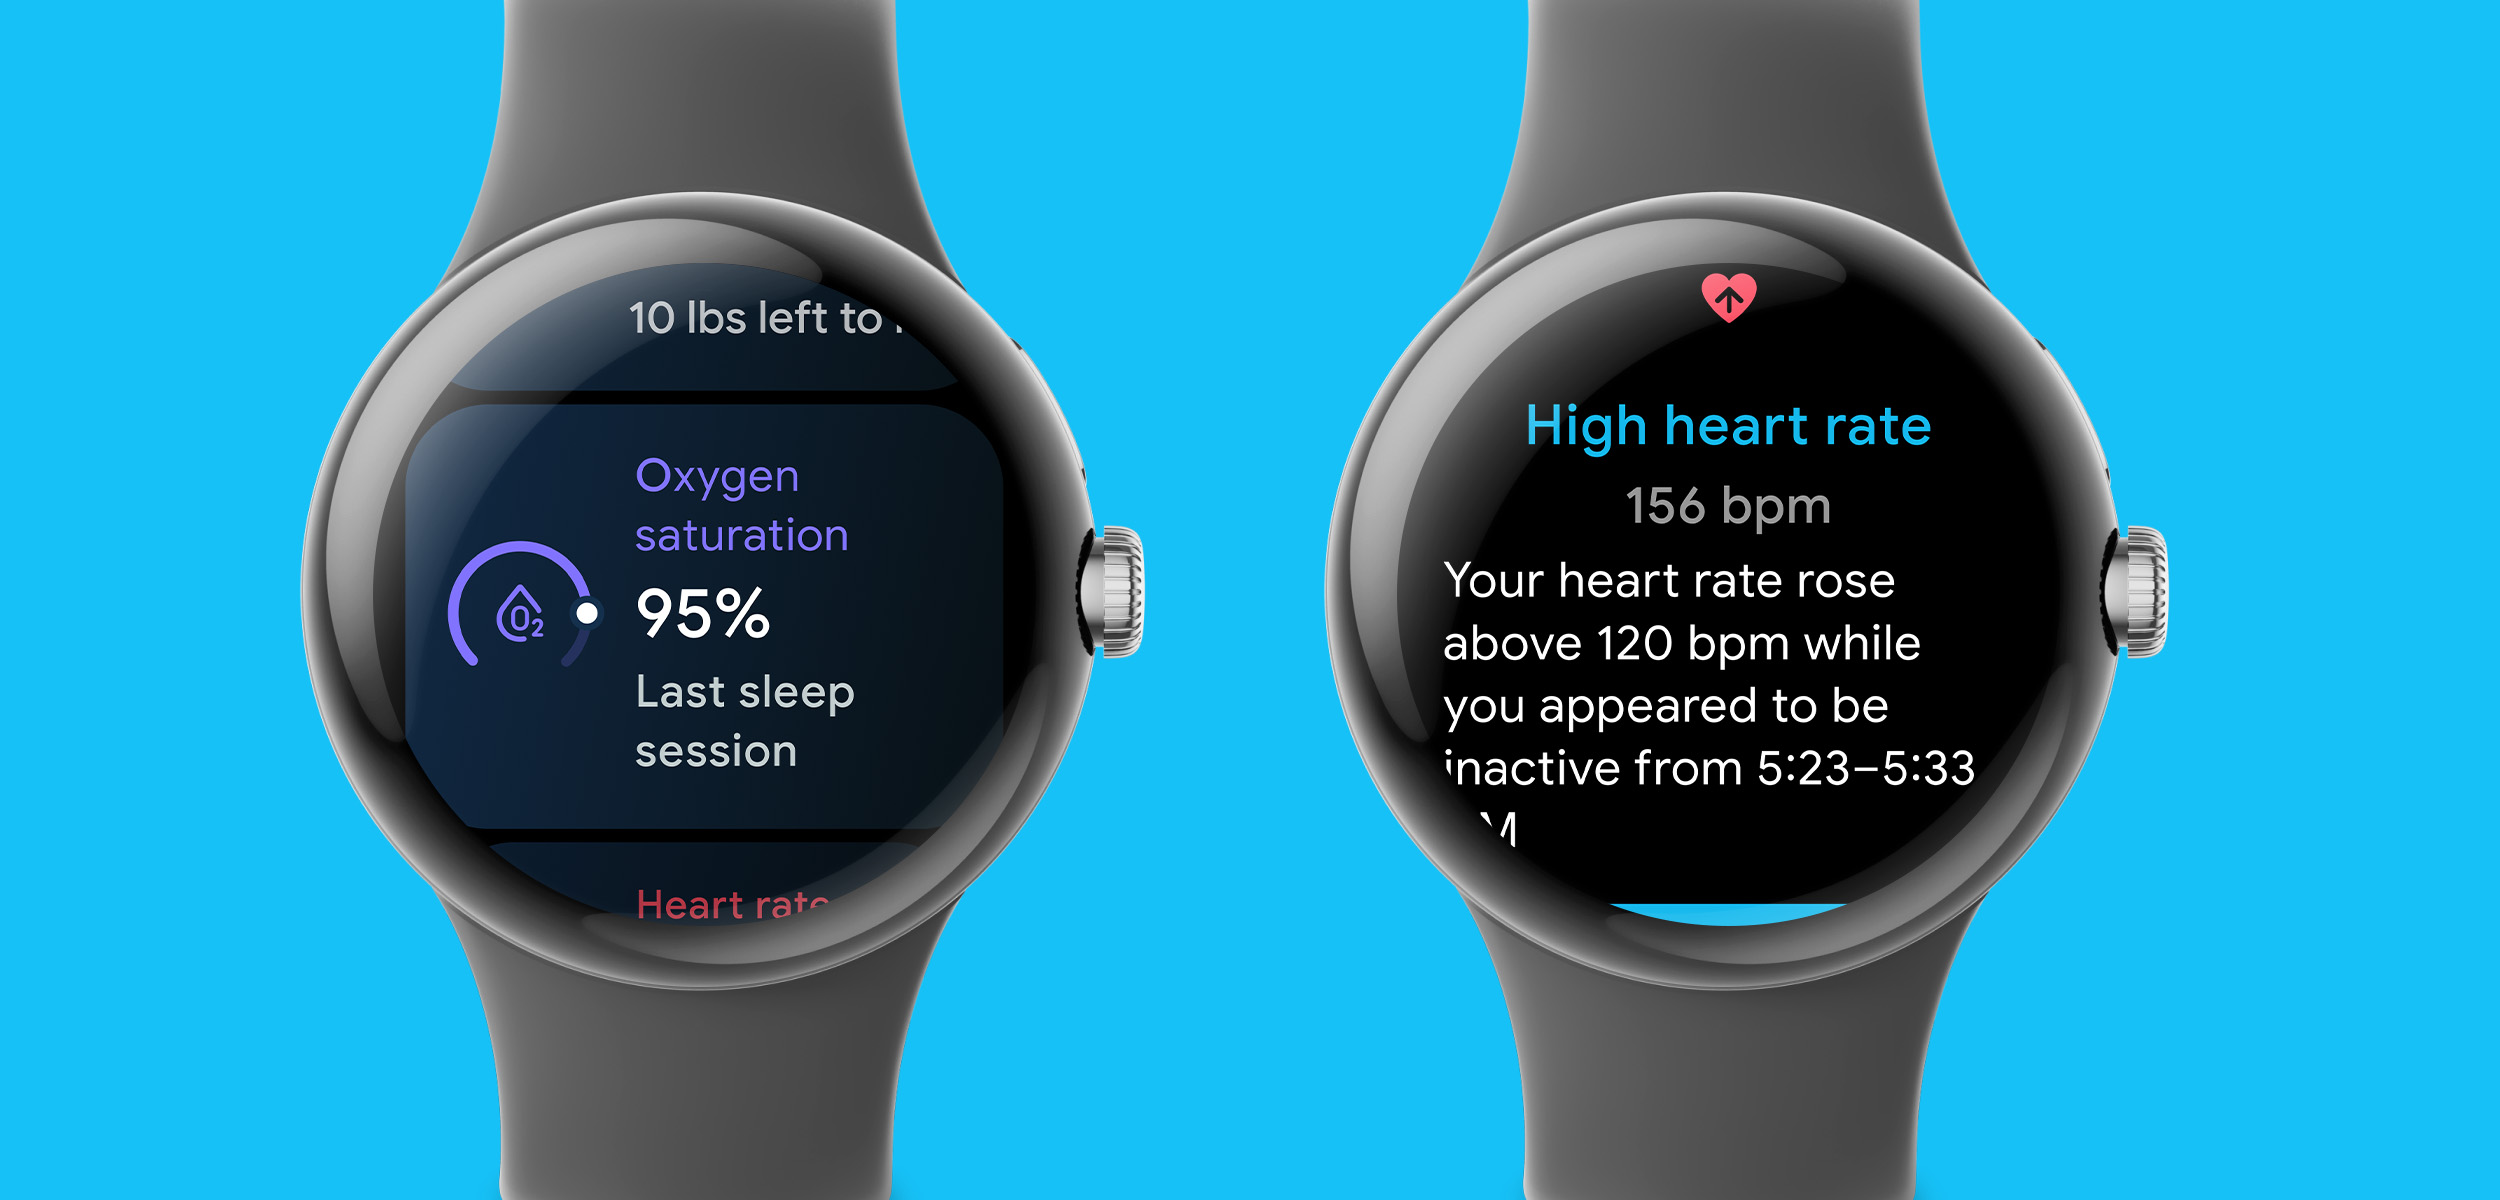 Pixel Watch Blood Oxygen, Heart Rate Alerts